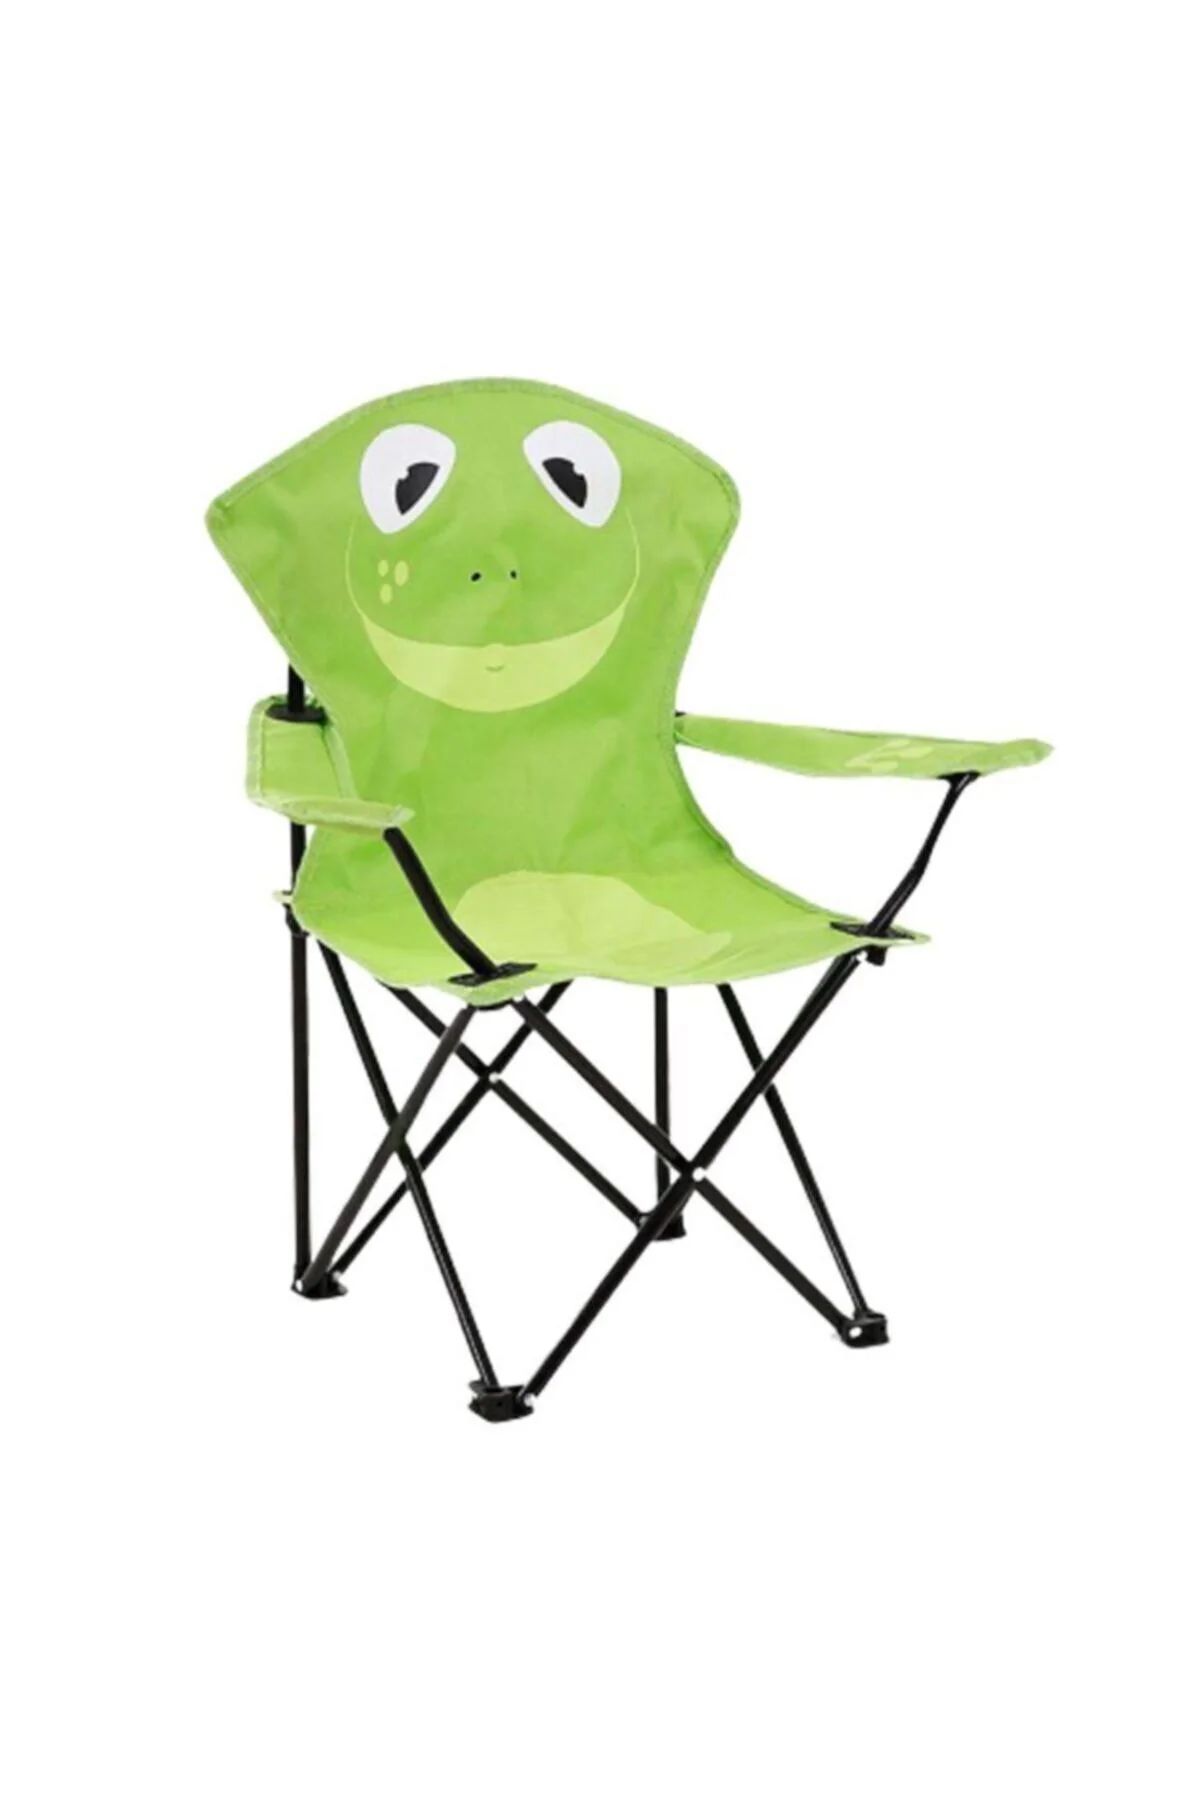 Çocuk Kamp Sandalyesi Kurbağa Desenli Taşıma Çantası Hediyeli